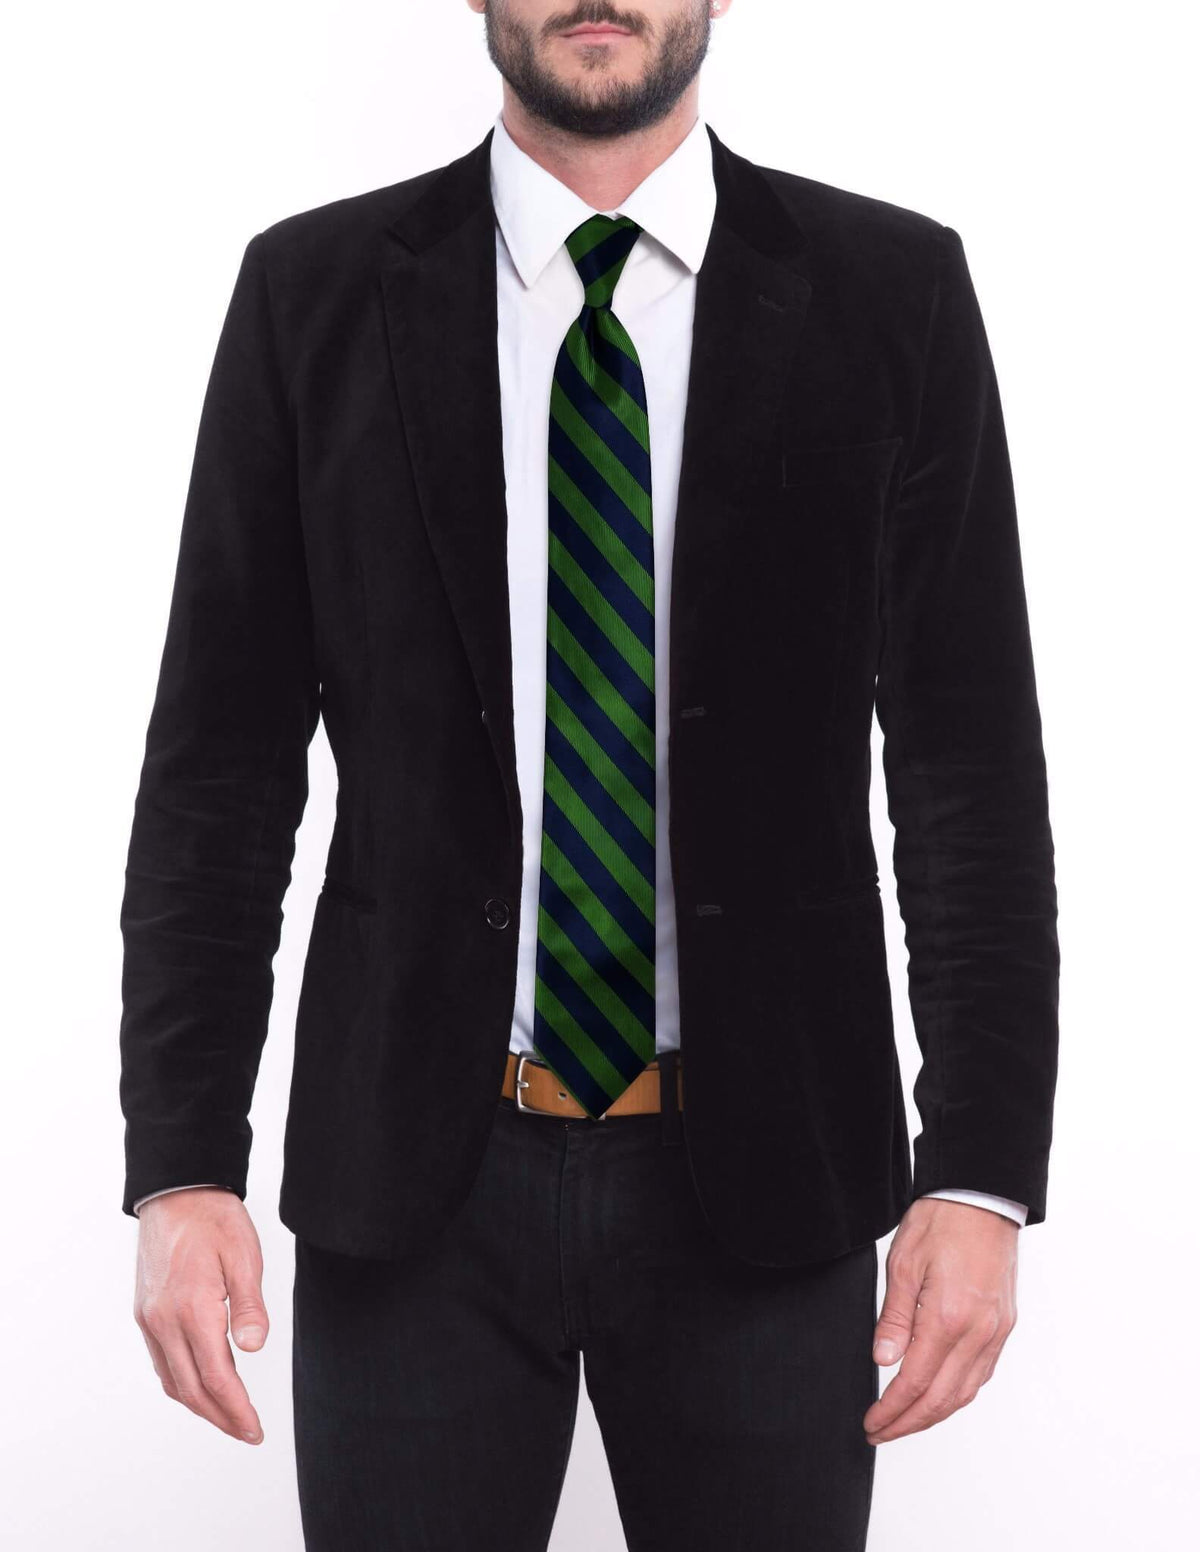 Green Navy Blue Striped Skinny Pre-tied Tie, Tie, GoTie